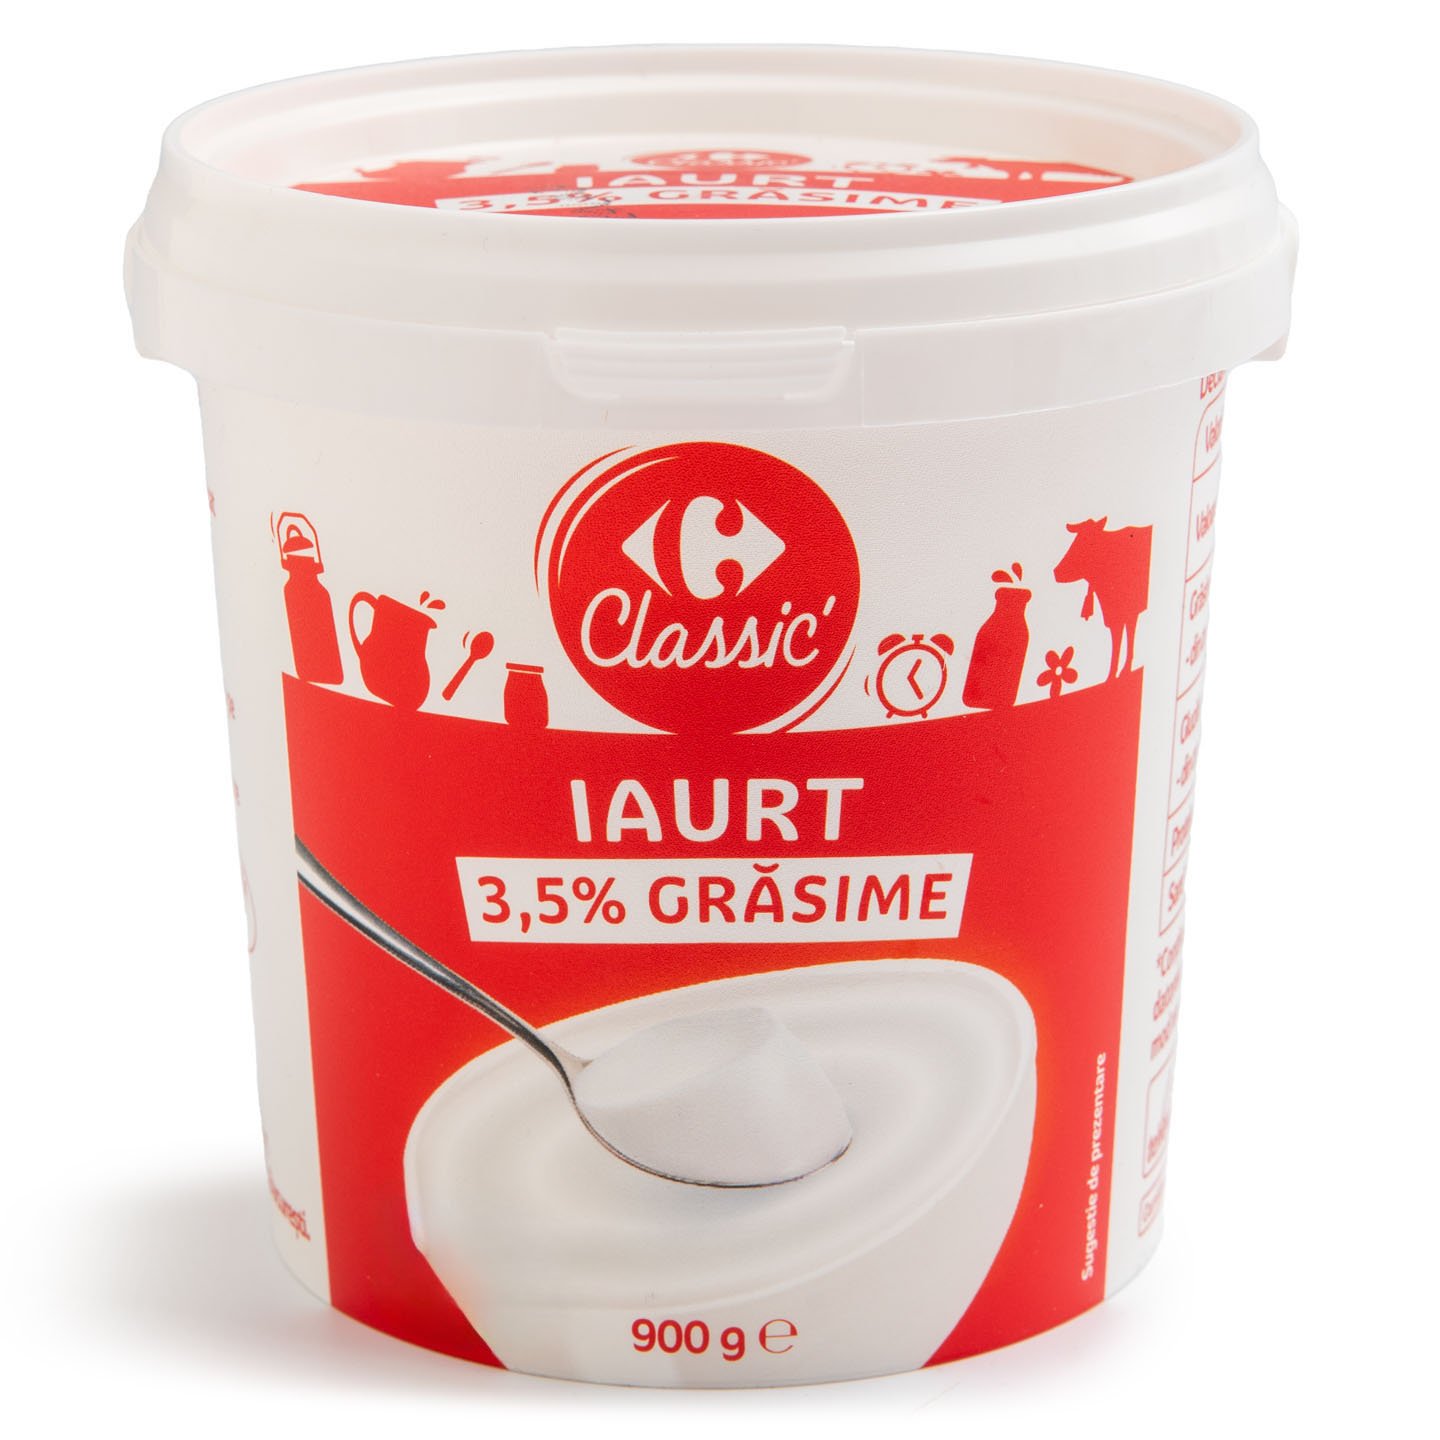 Iaurt 3.5% grăsime Carrefour Classic 900g